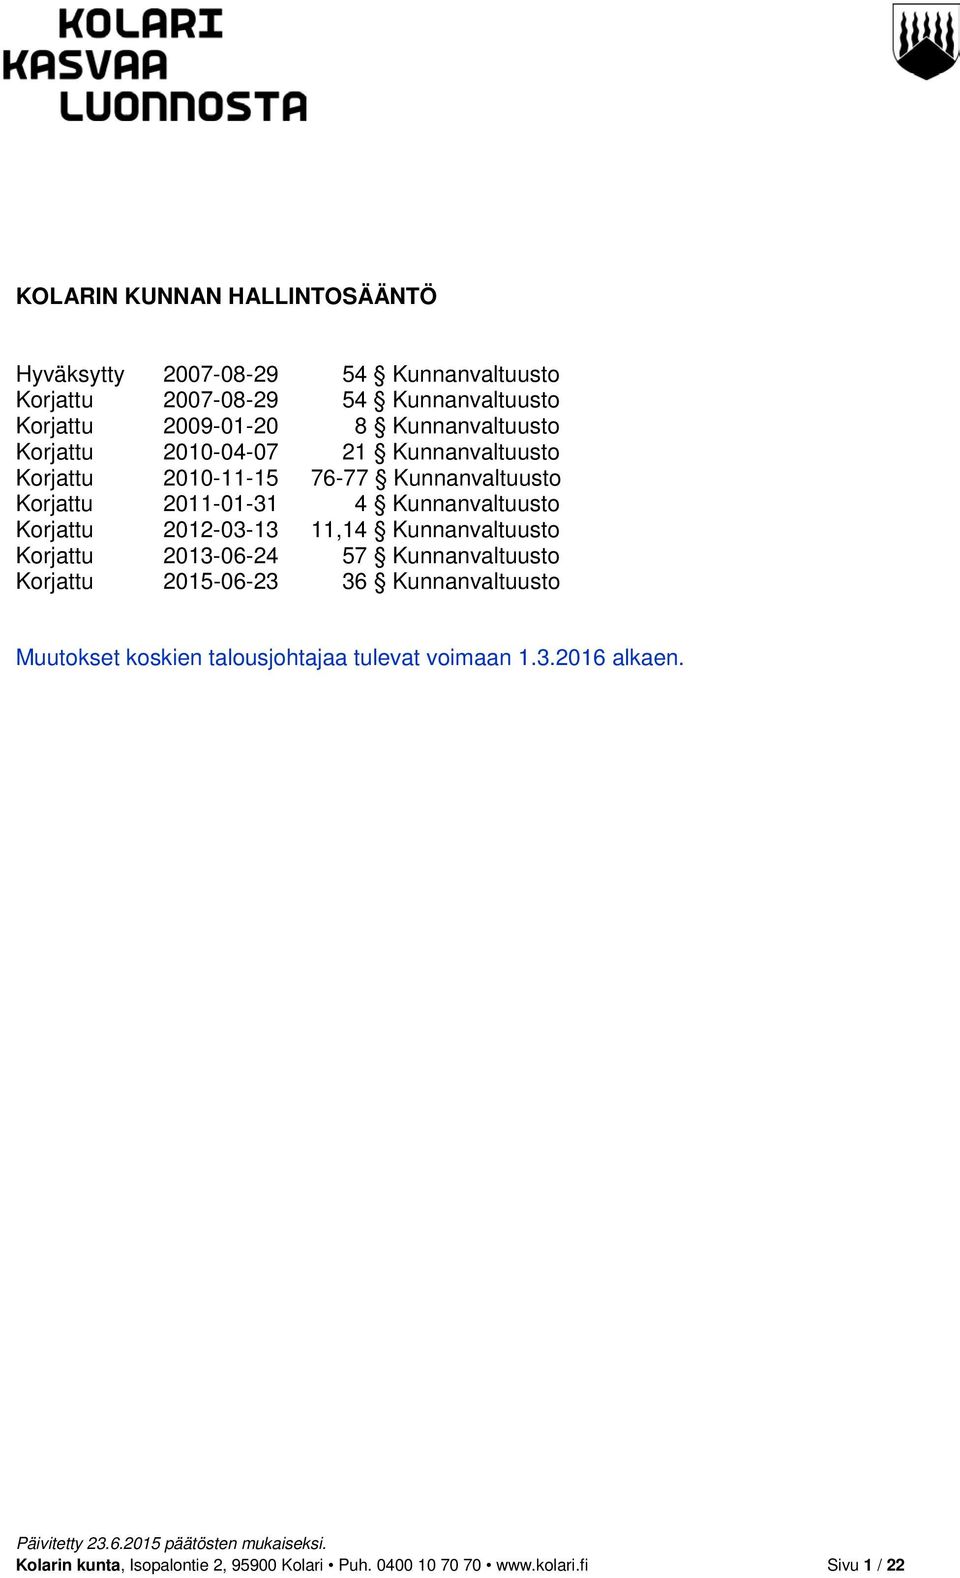 Korjattu 2012-03-13 11,14 Kunnanvaltuusto Korjattu 2013-06-24 57 Kunnanvaltuusto Korjattu 2015-06-23 36 Kunnanvaltuusto Muutokset